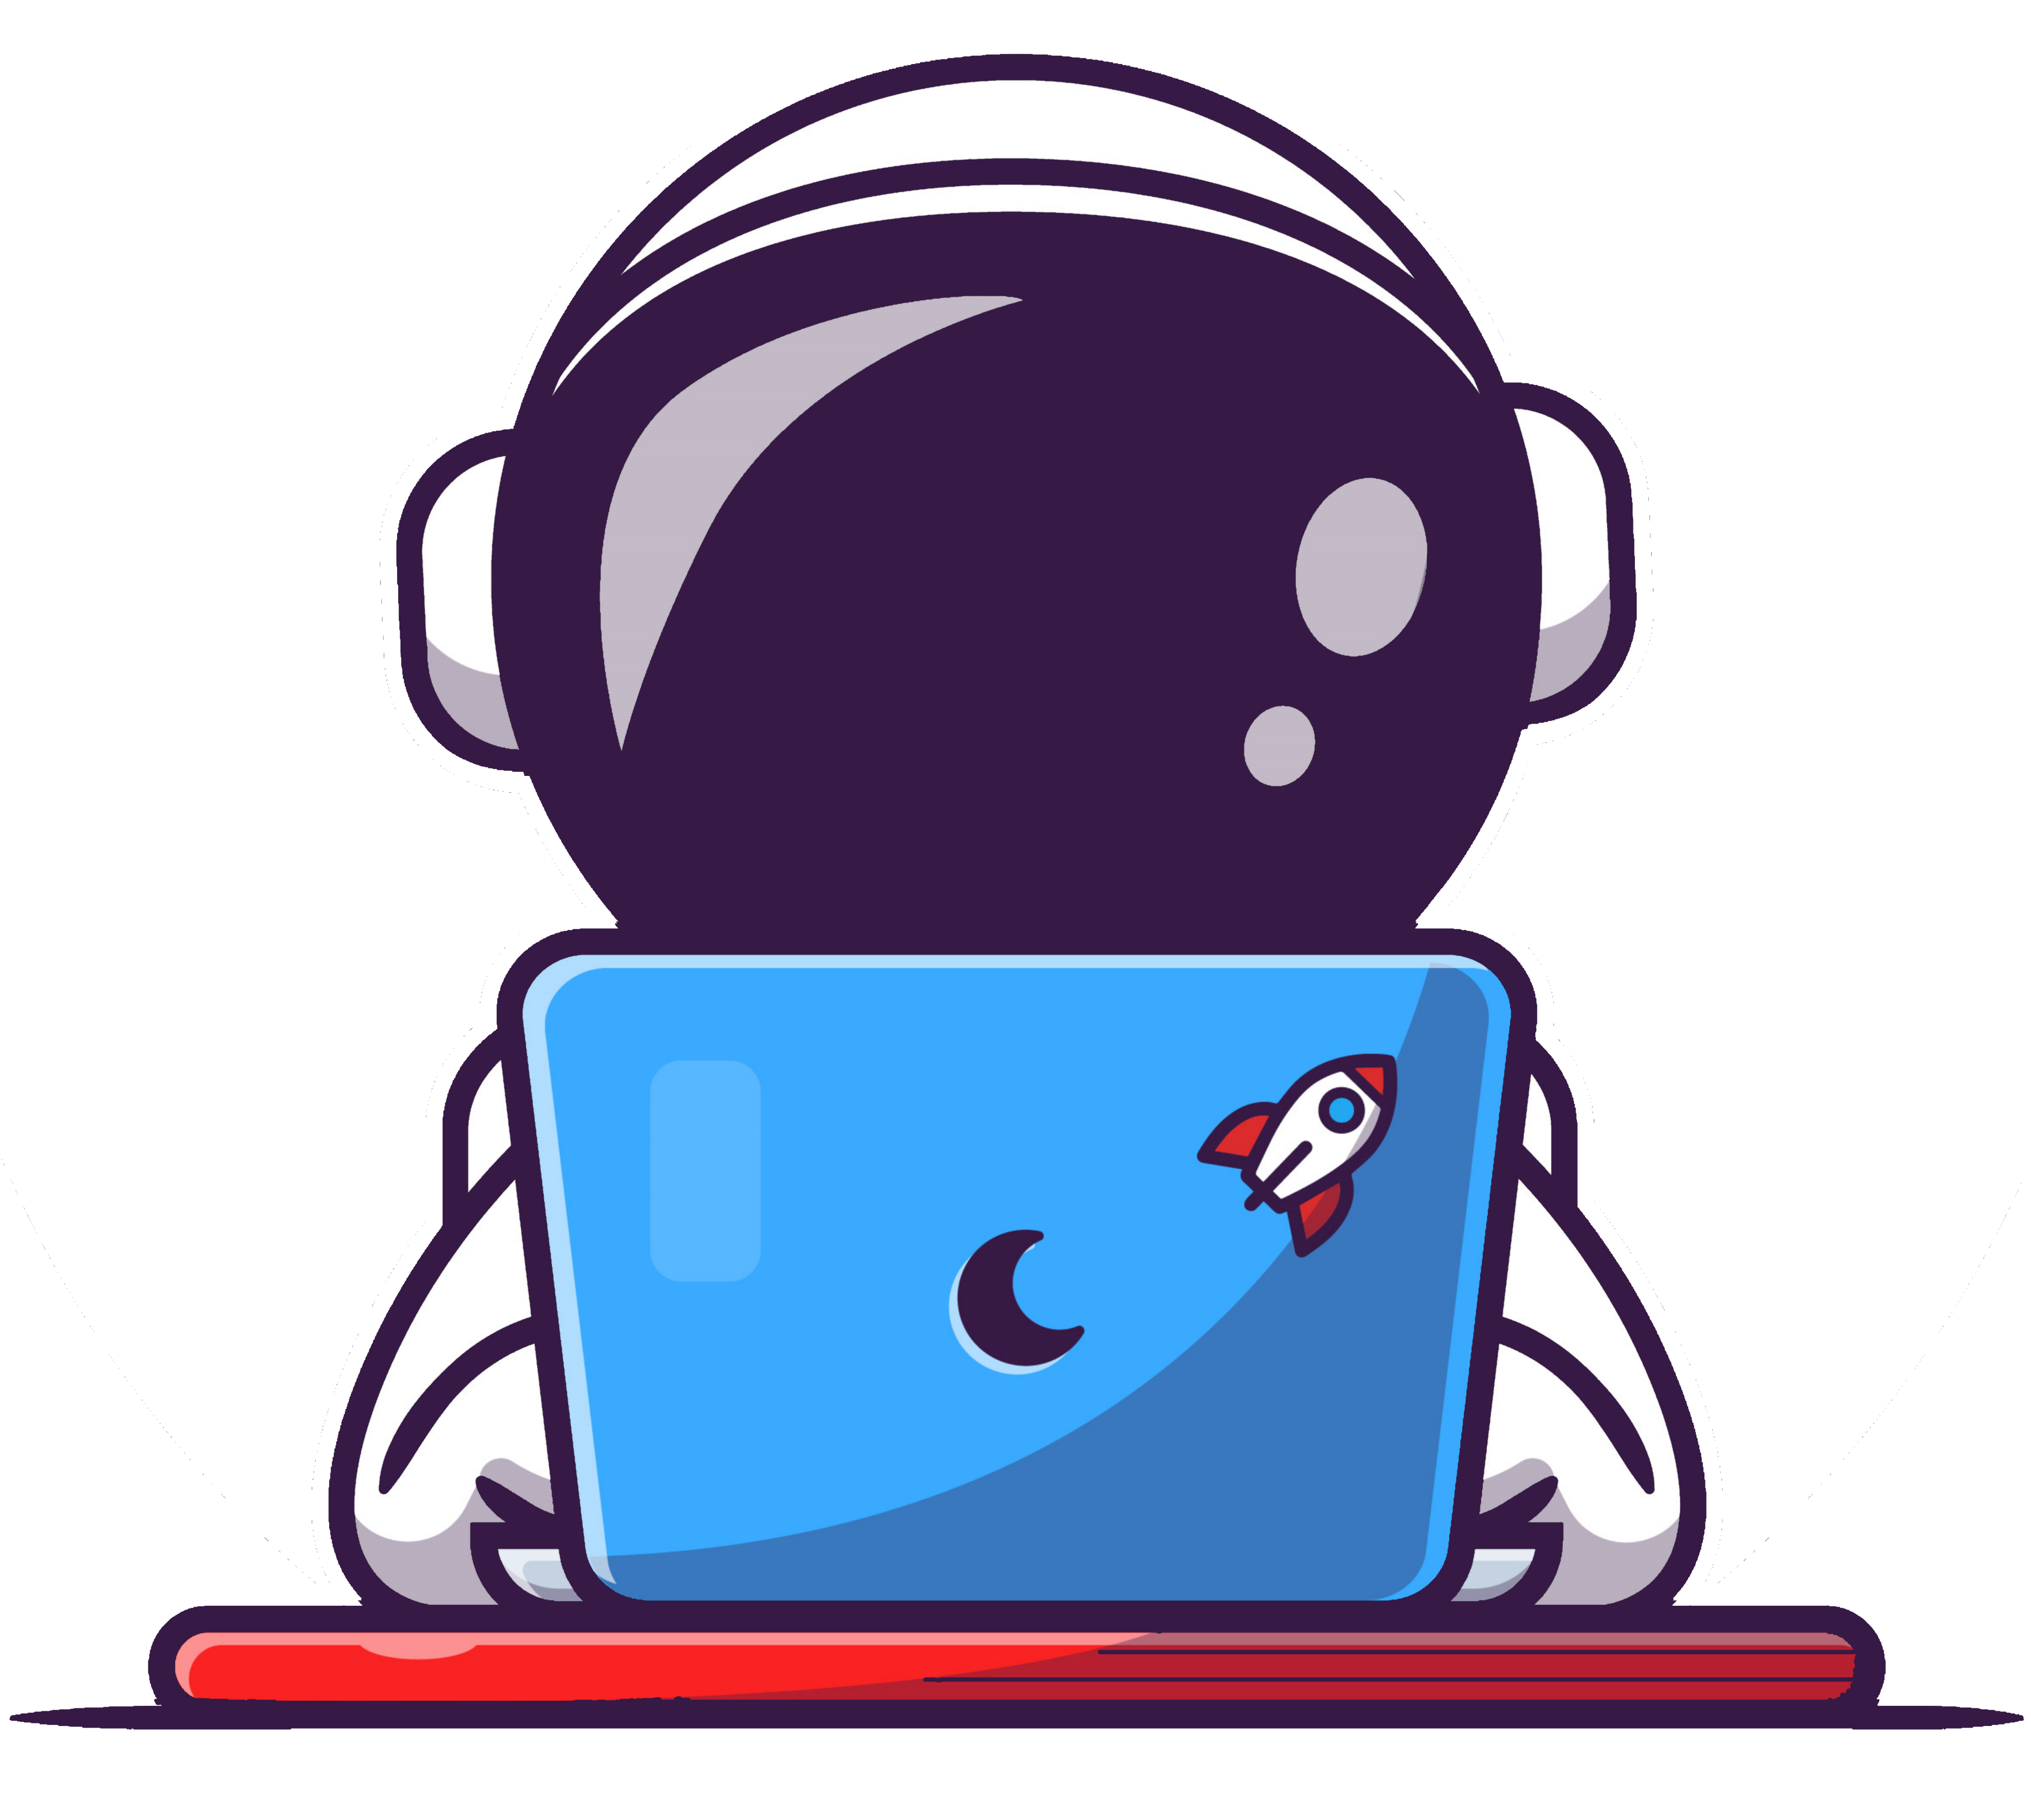 Astronaut on computer